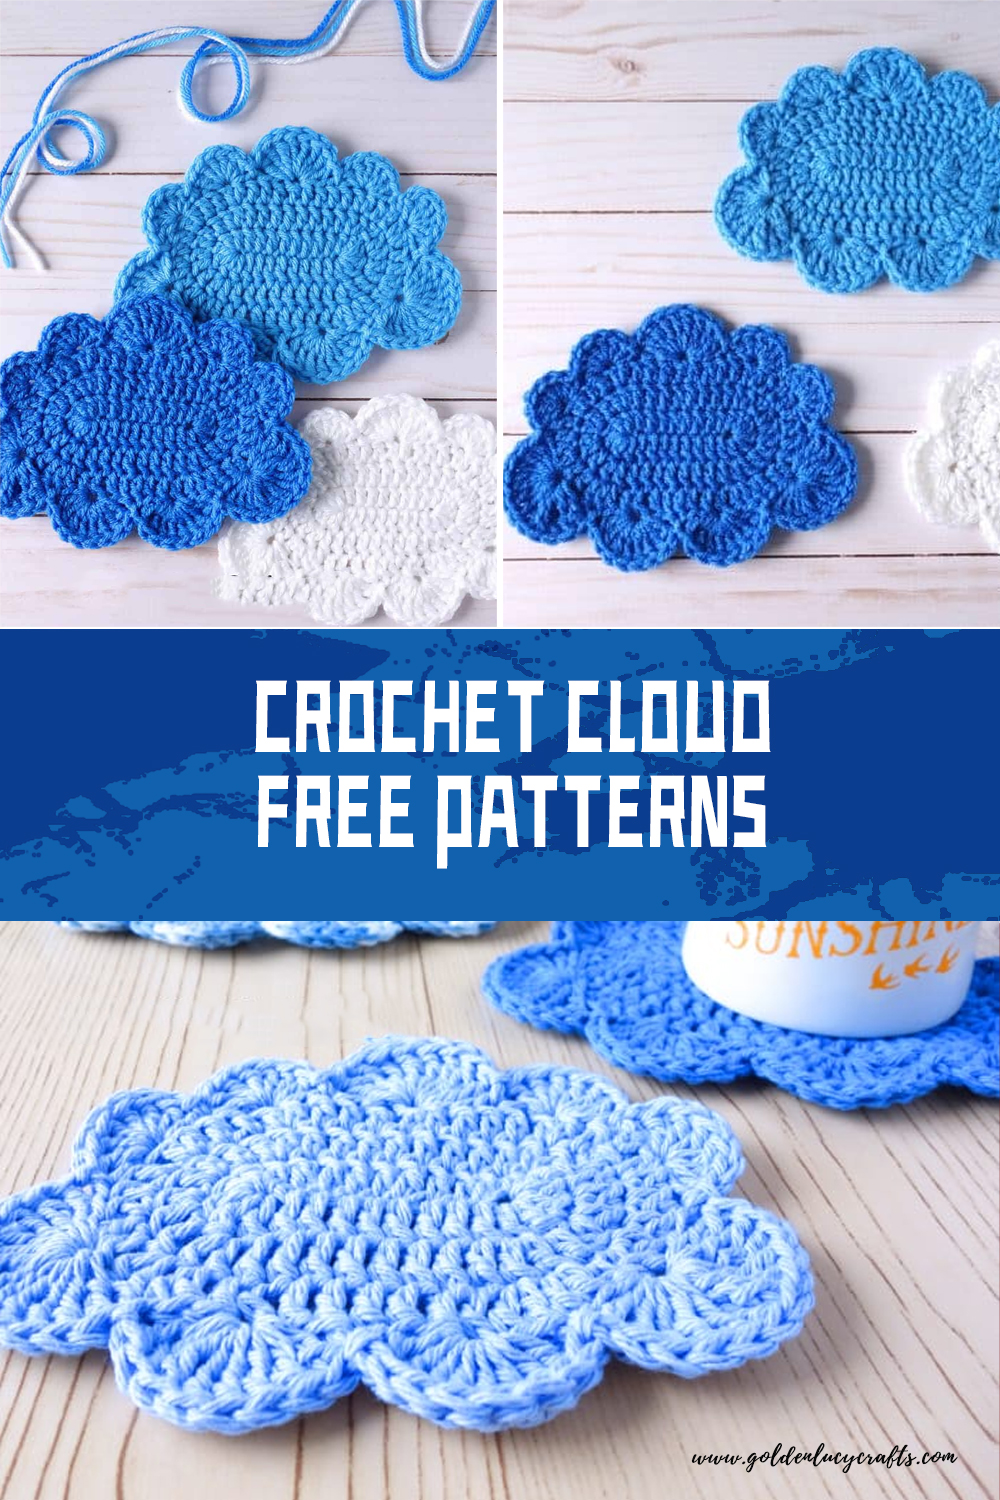 Crochet Cloud FREE Patterns